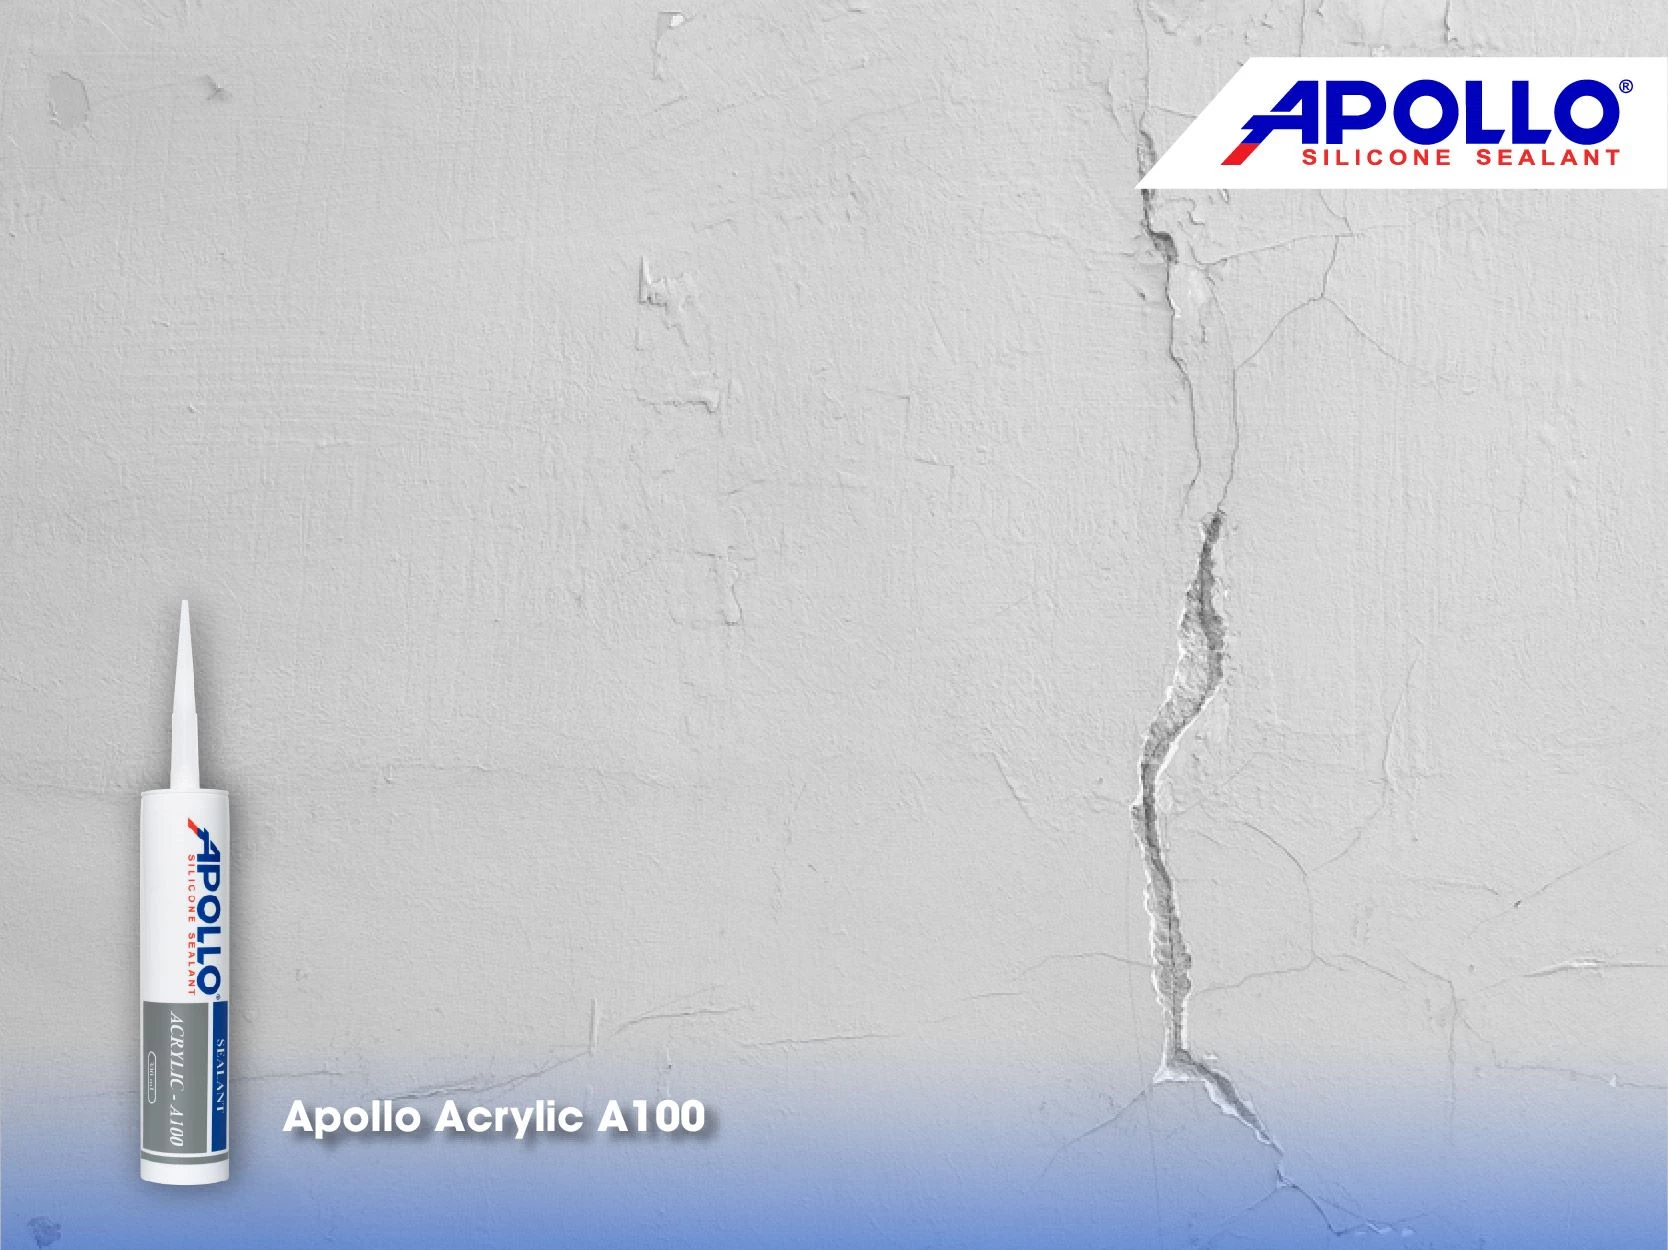 Apollo Acrylic A100 chuyên gia xử lý, trám kín các vết nứt tường